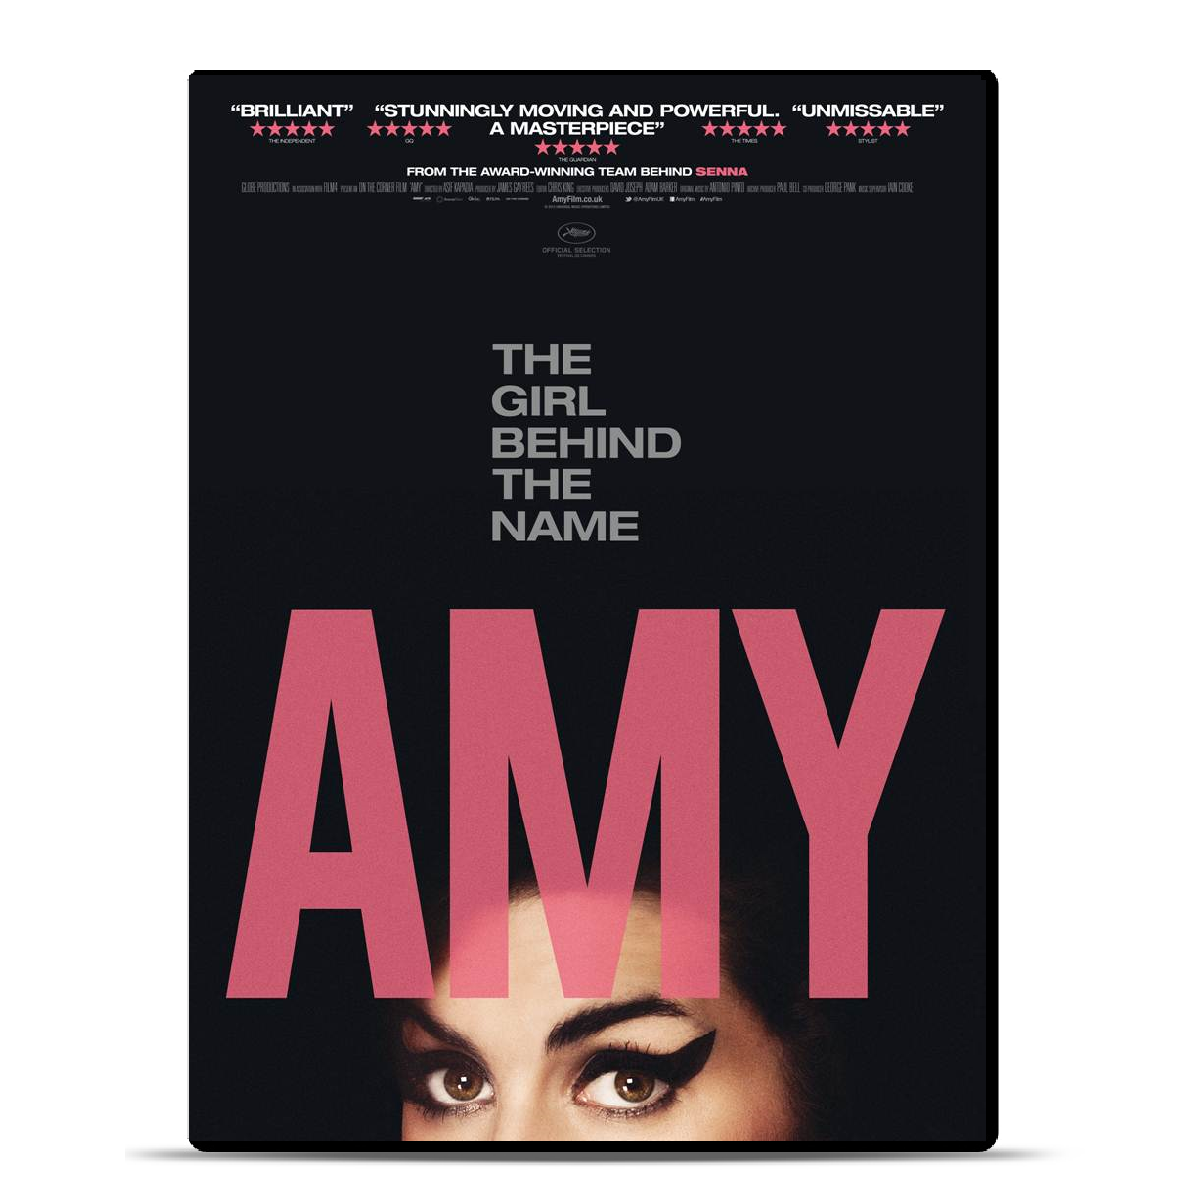 Amy Winehouse - Amy: DVD